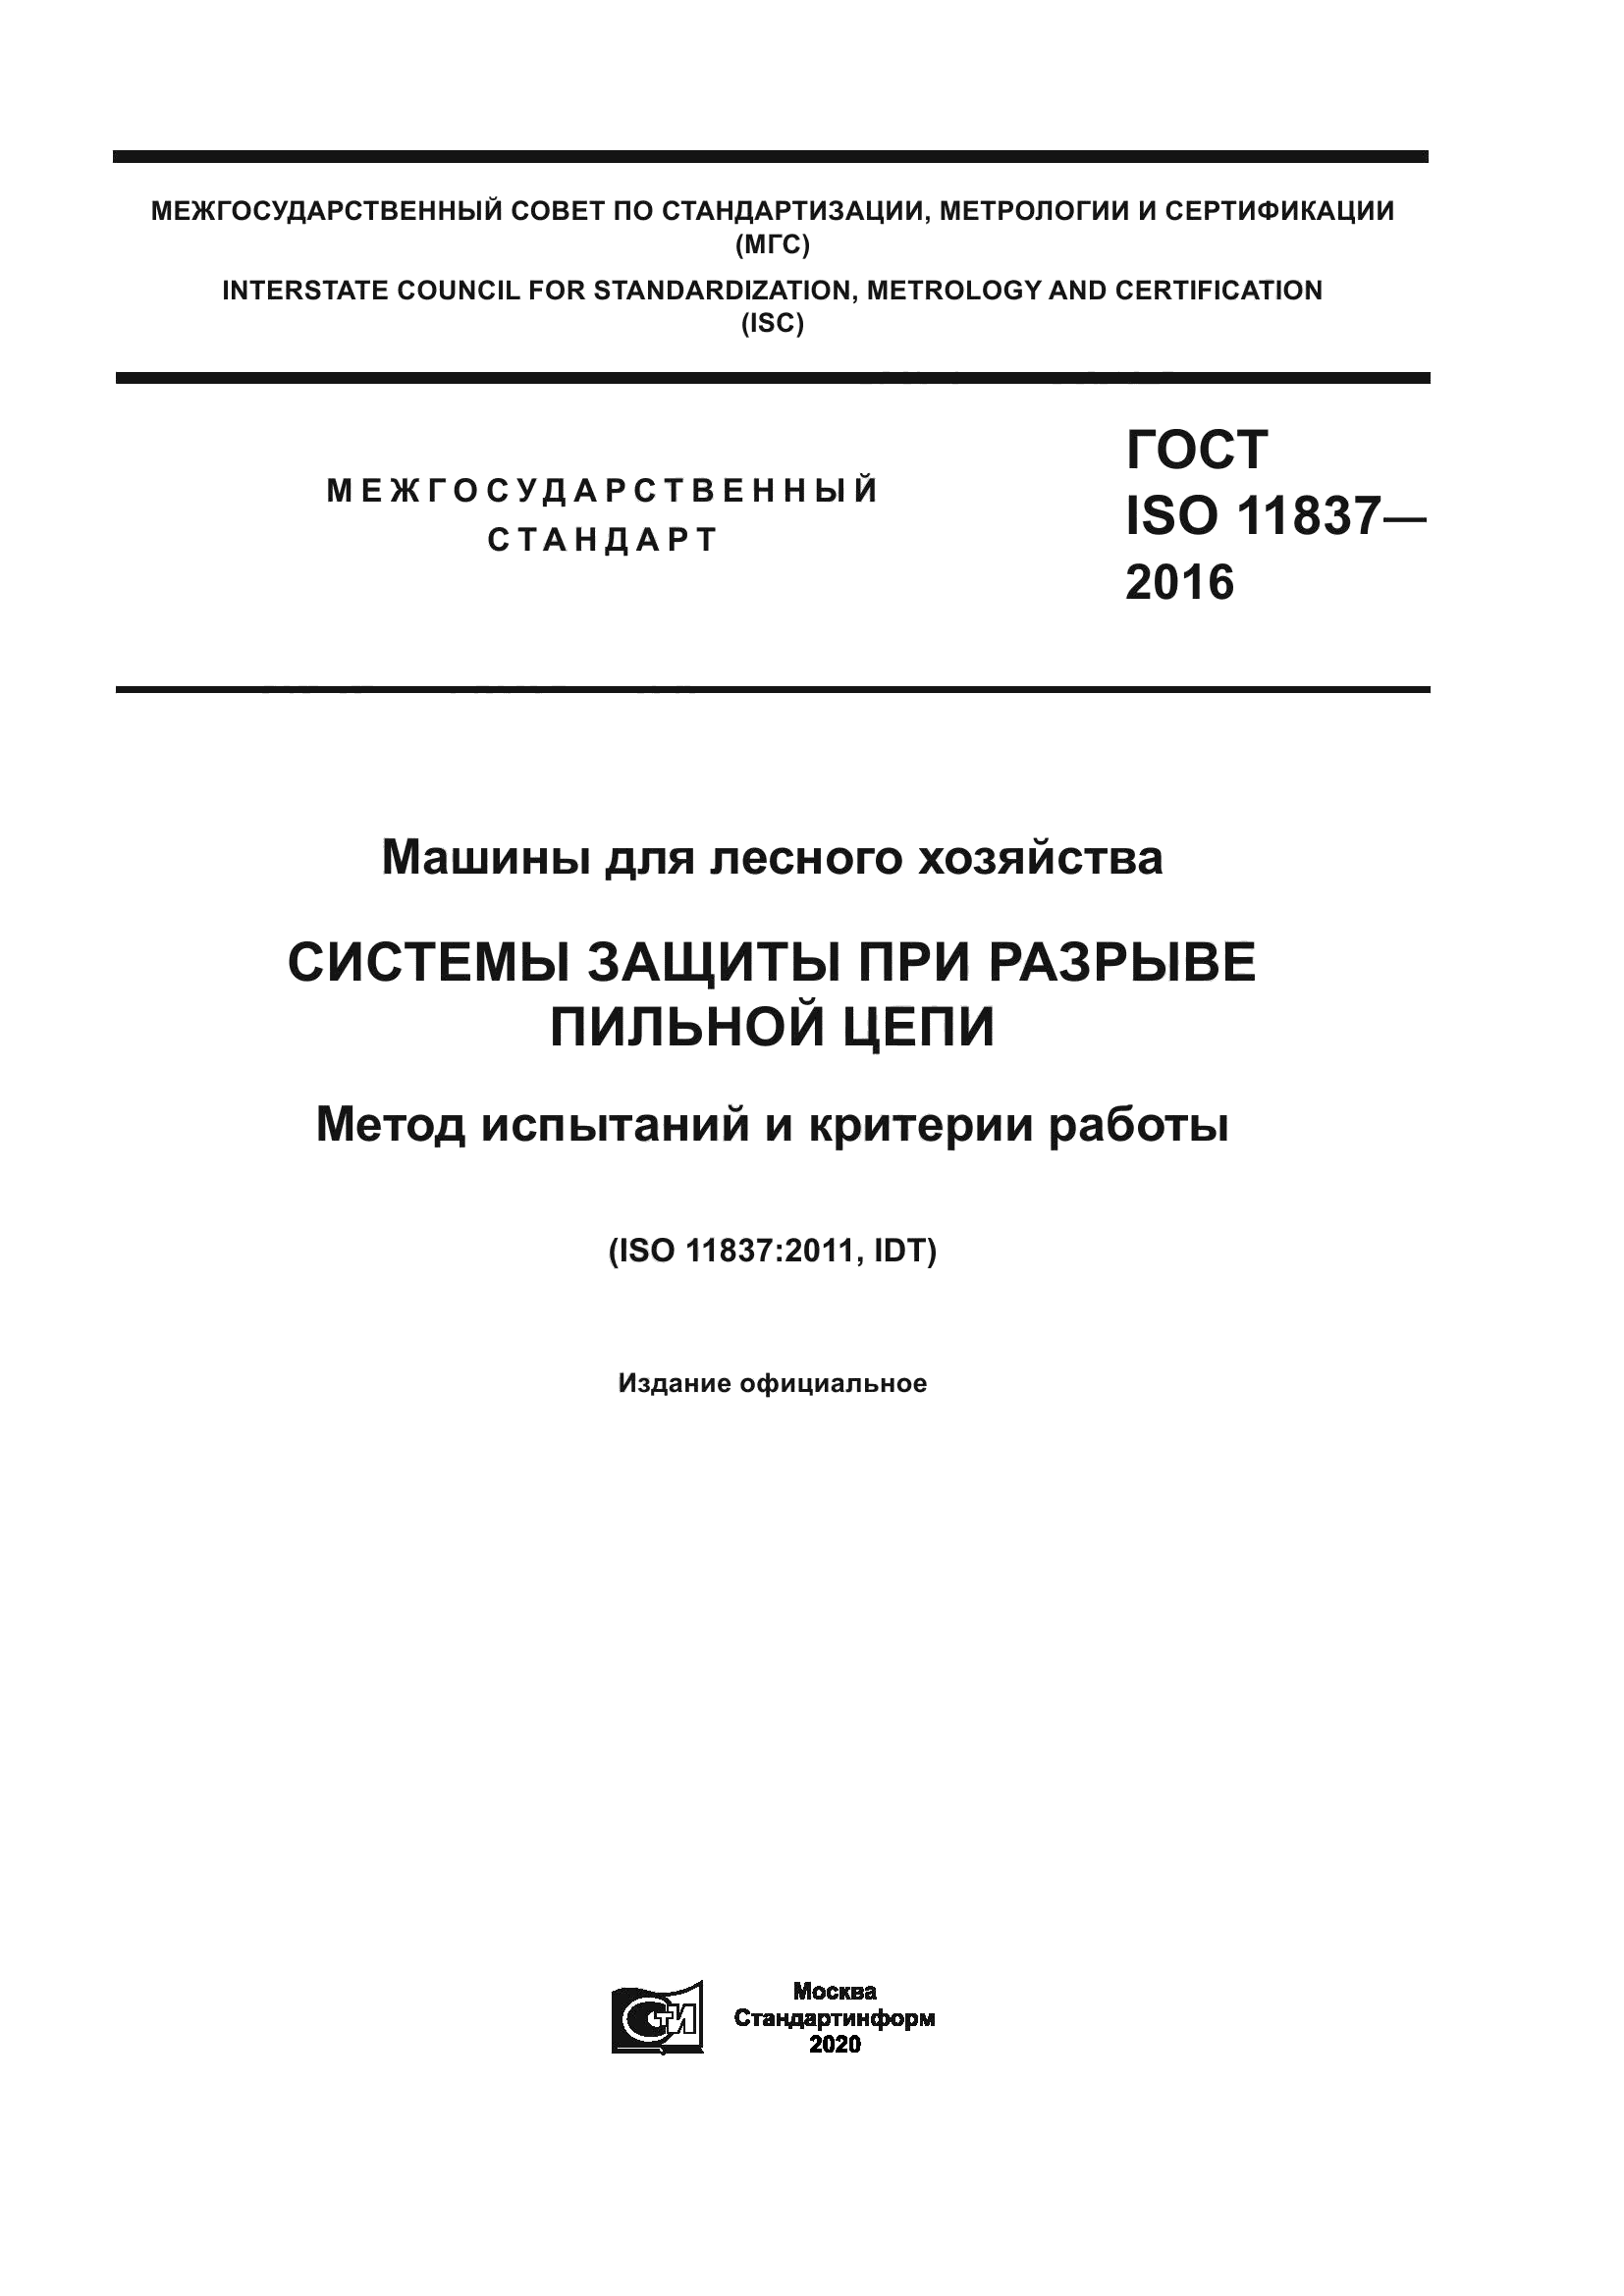 ГОСТ ISO 11837-2016